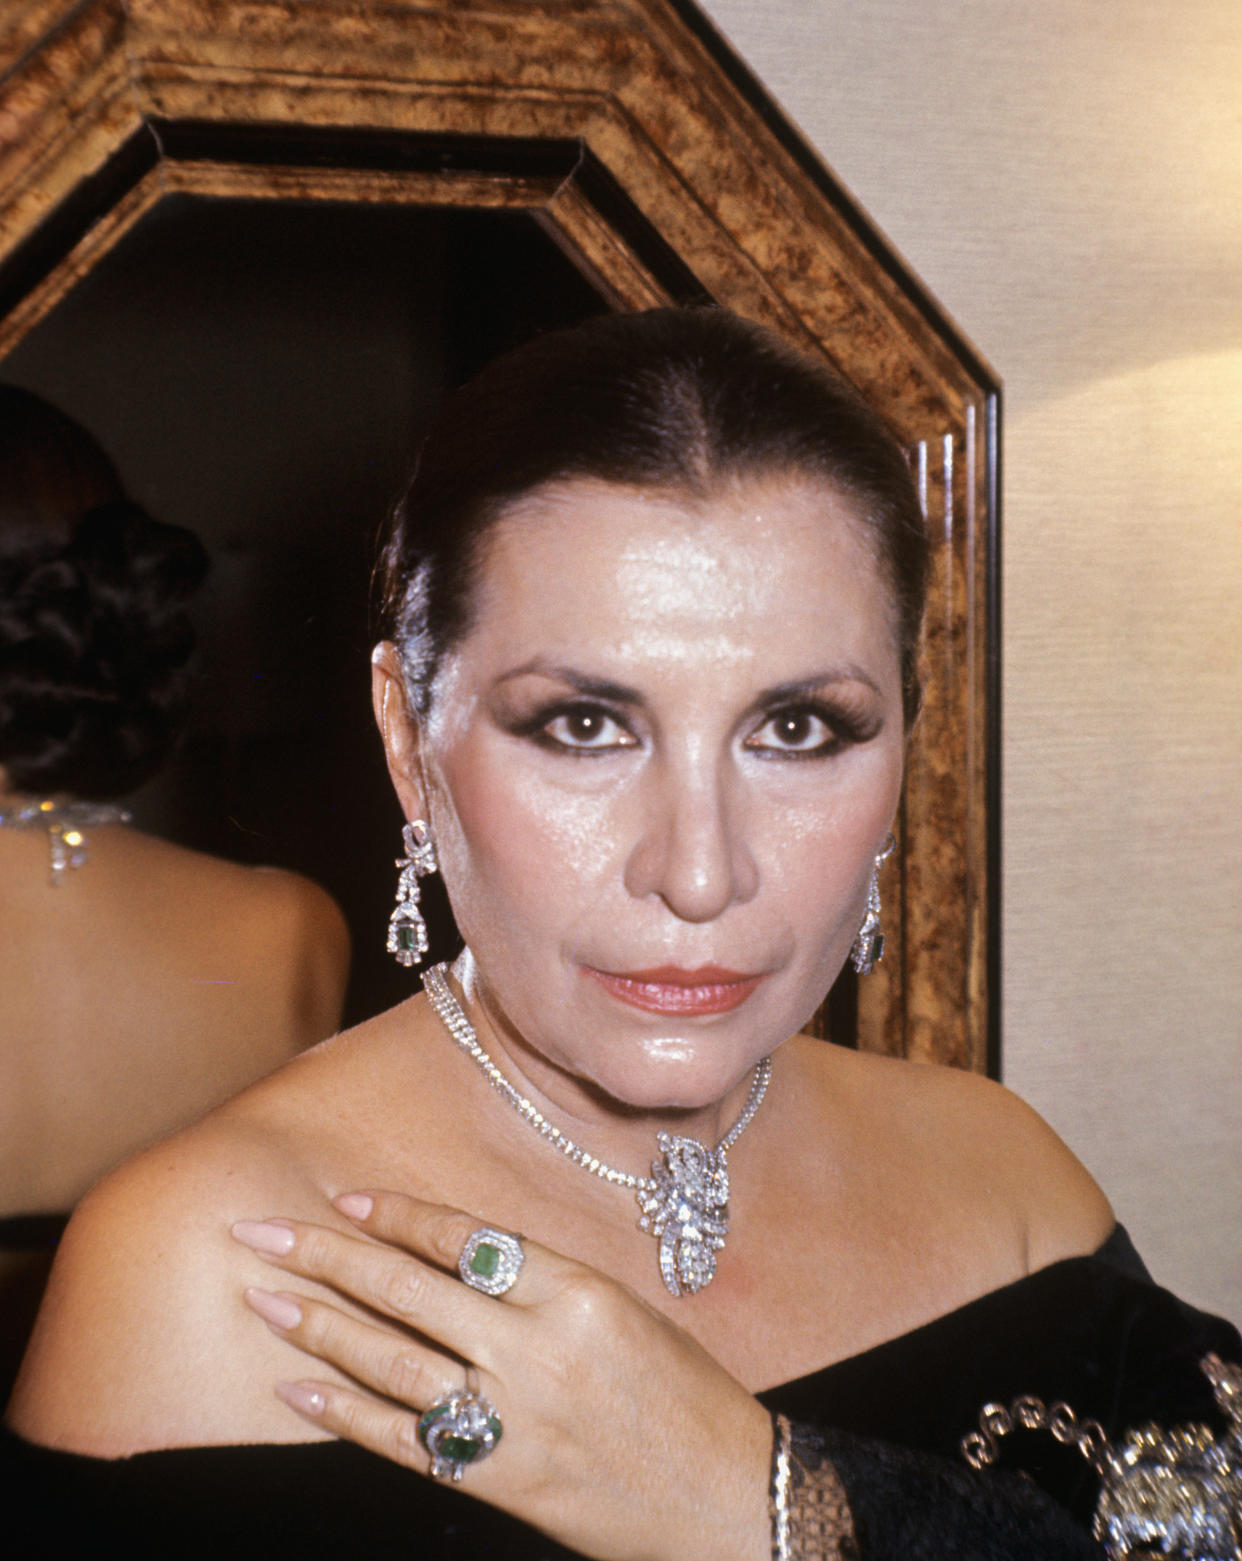 Lola Beltrán en 1977 en Madrid. (Photo by Gianni Ferrari/Cover/Getty Images).